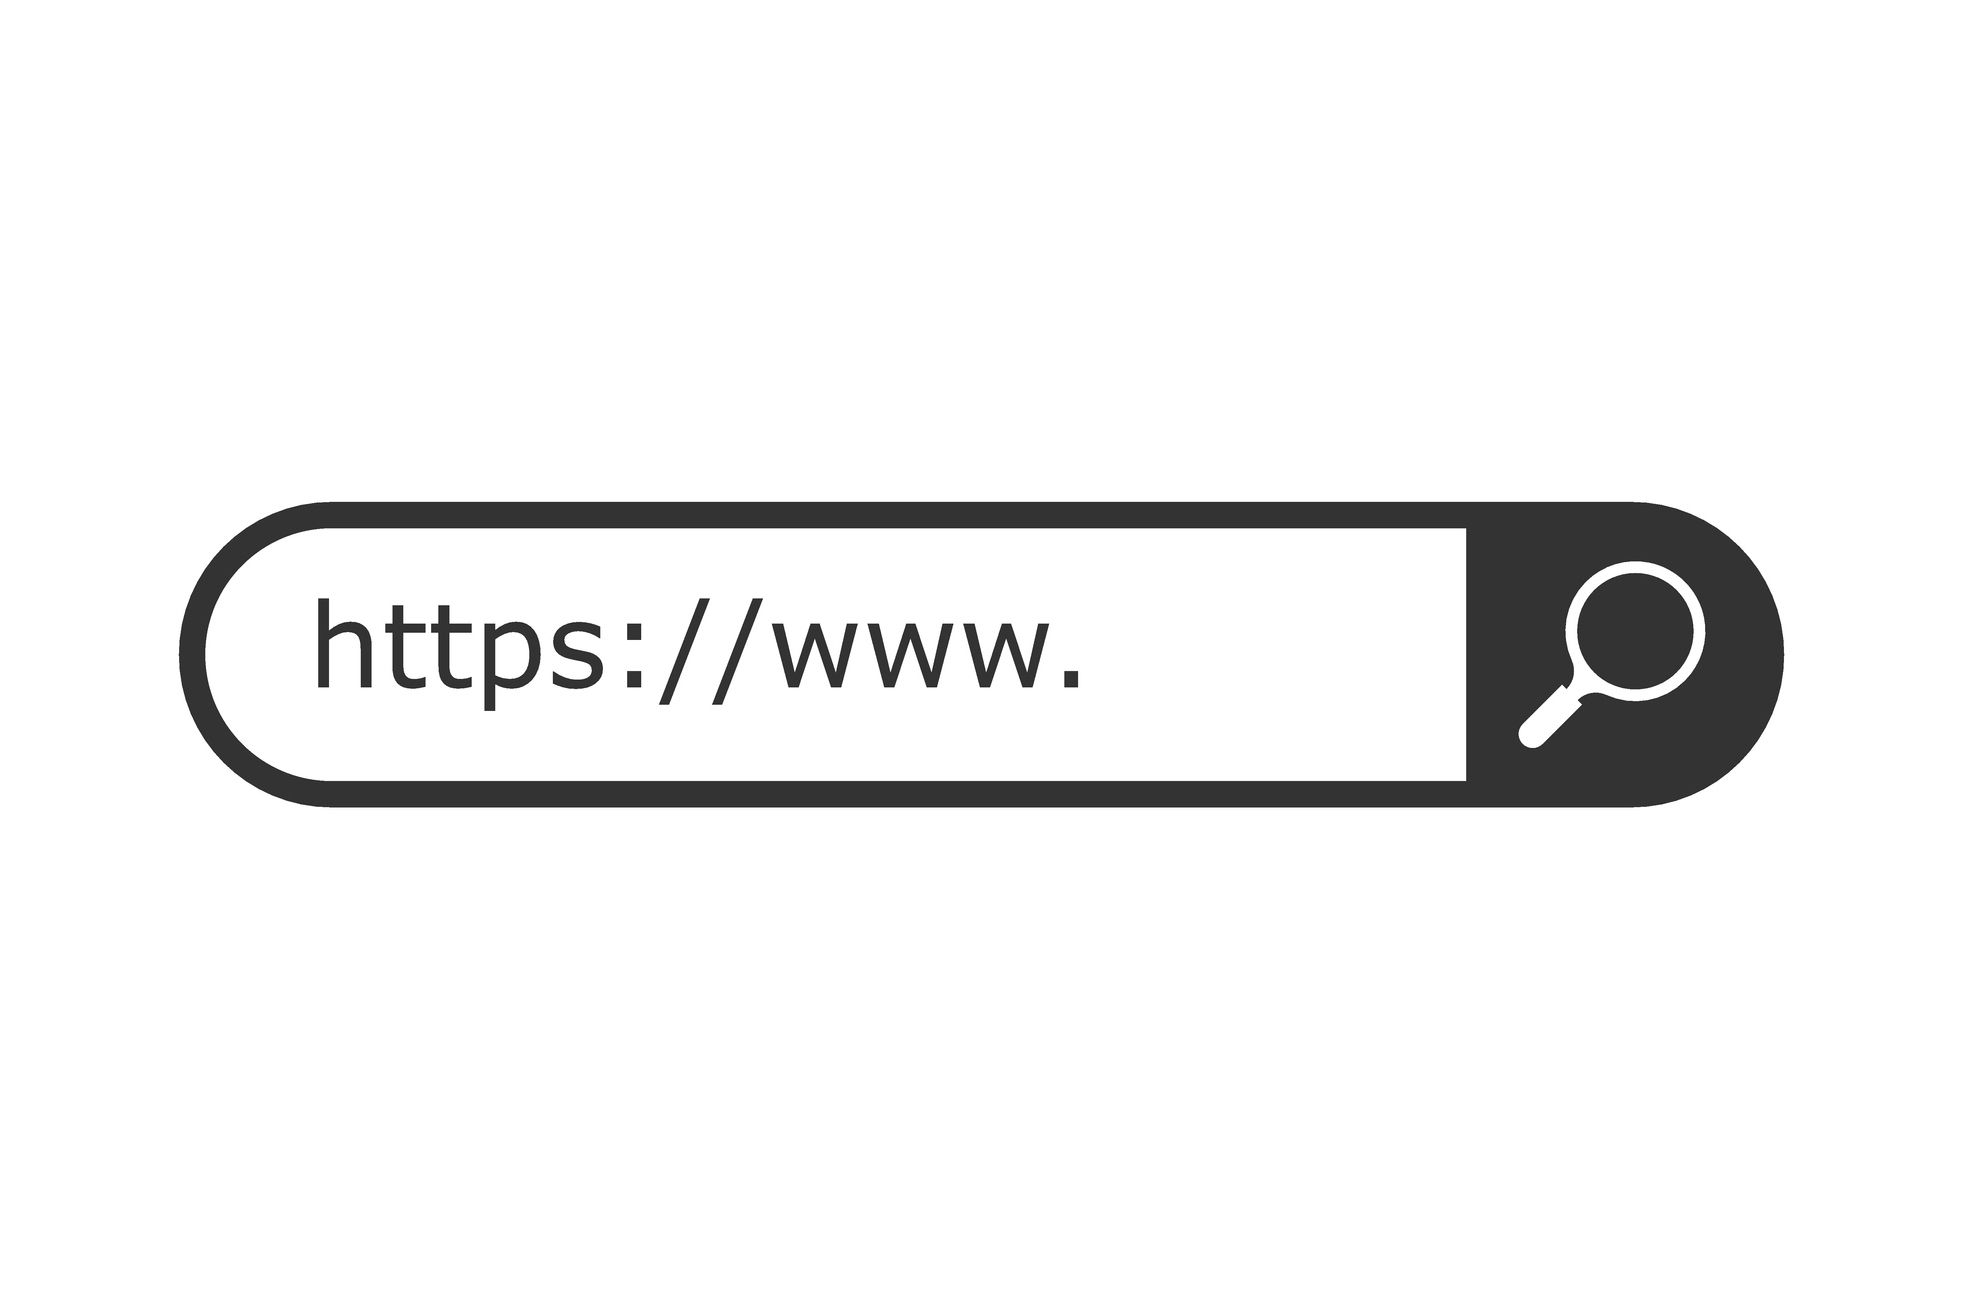 Obrázek vyhledávací lišty webové adresy https